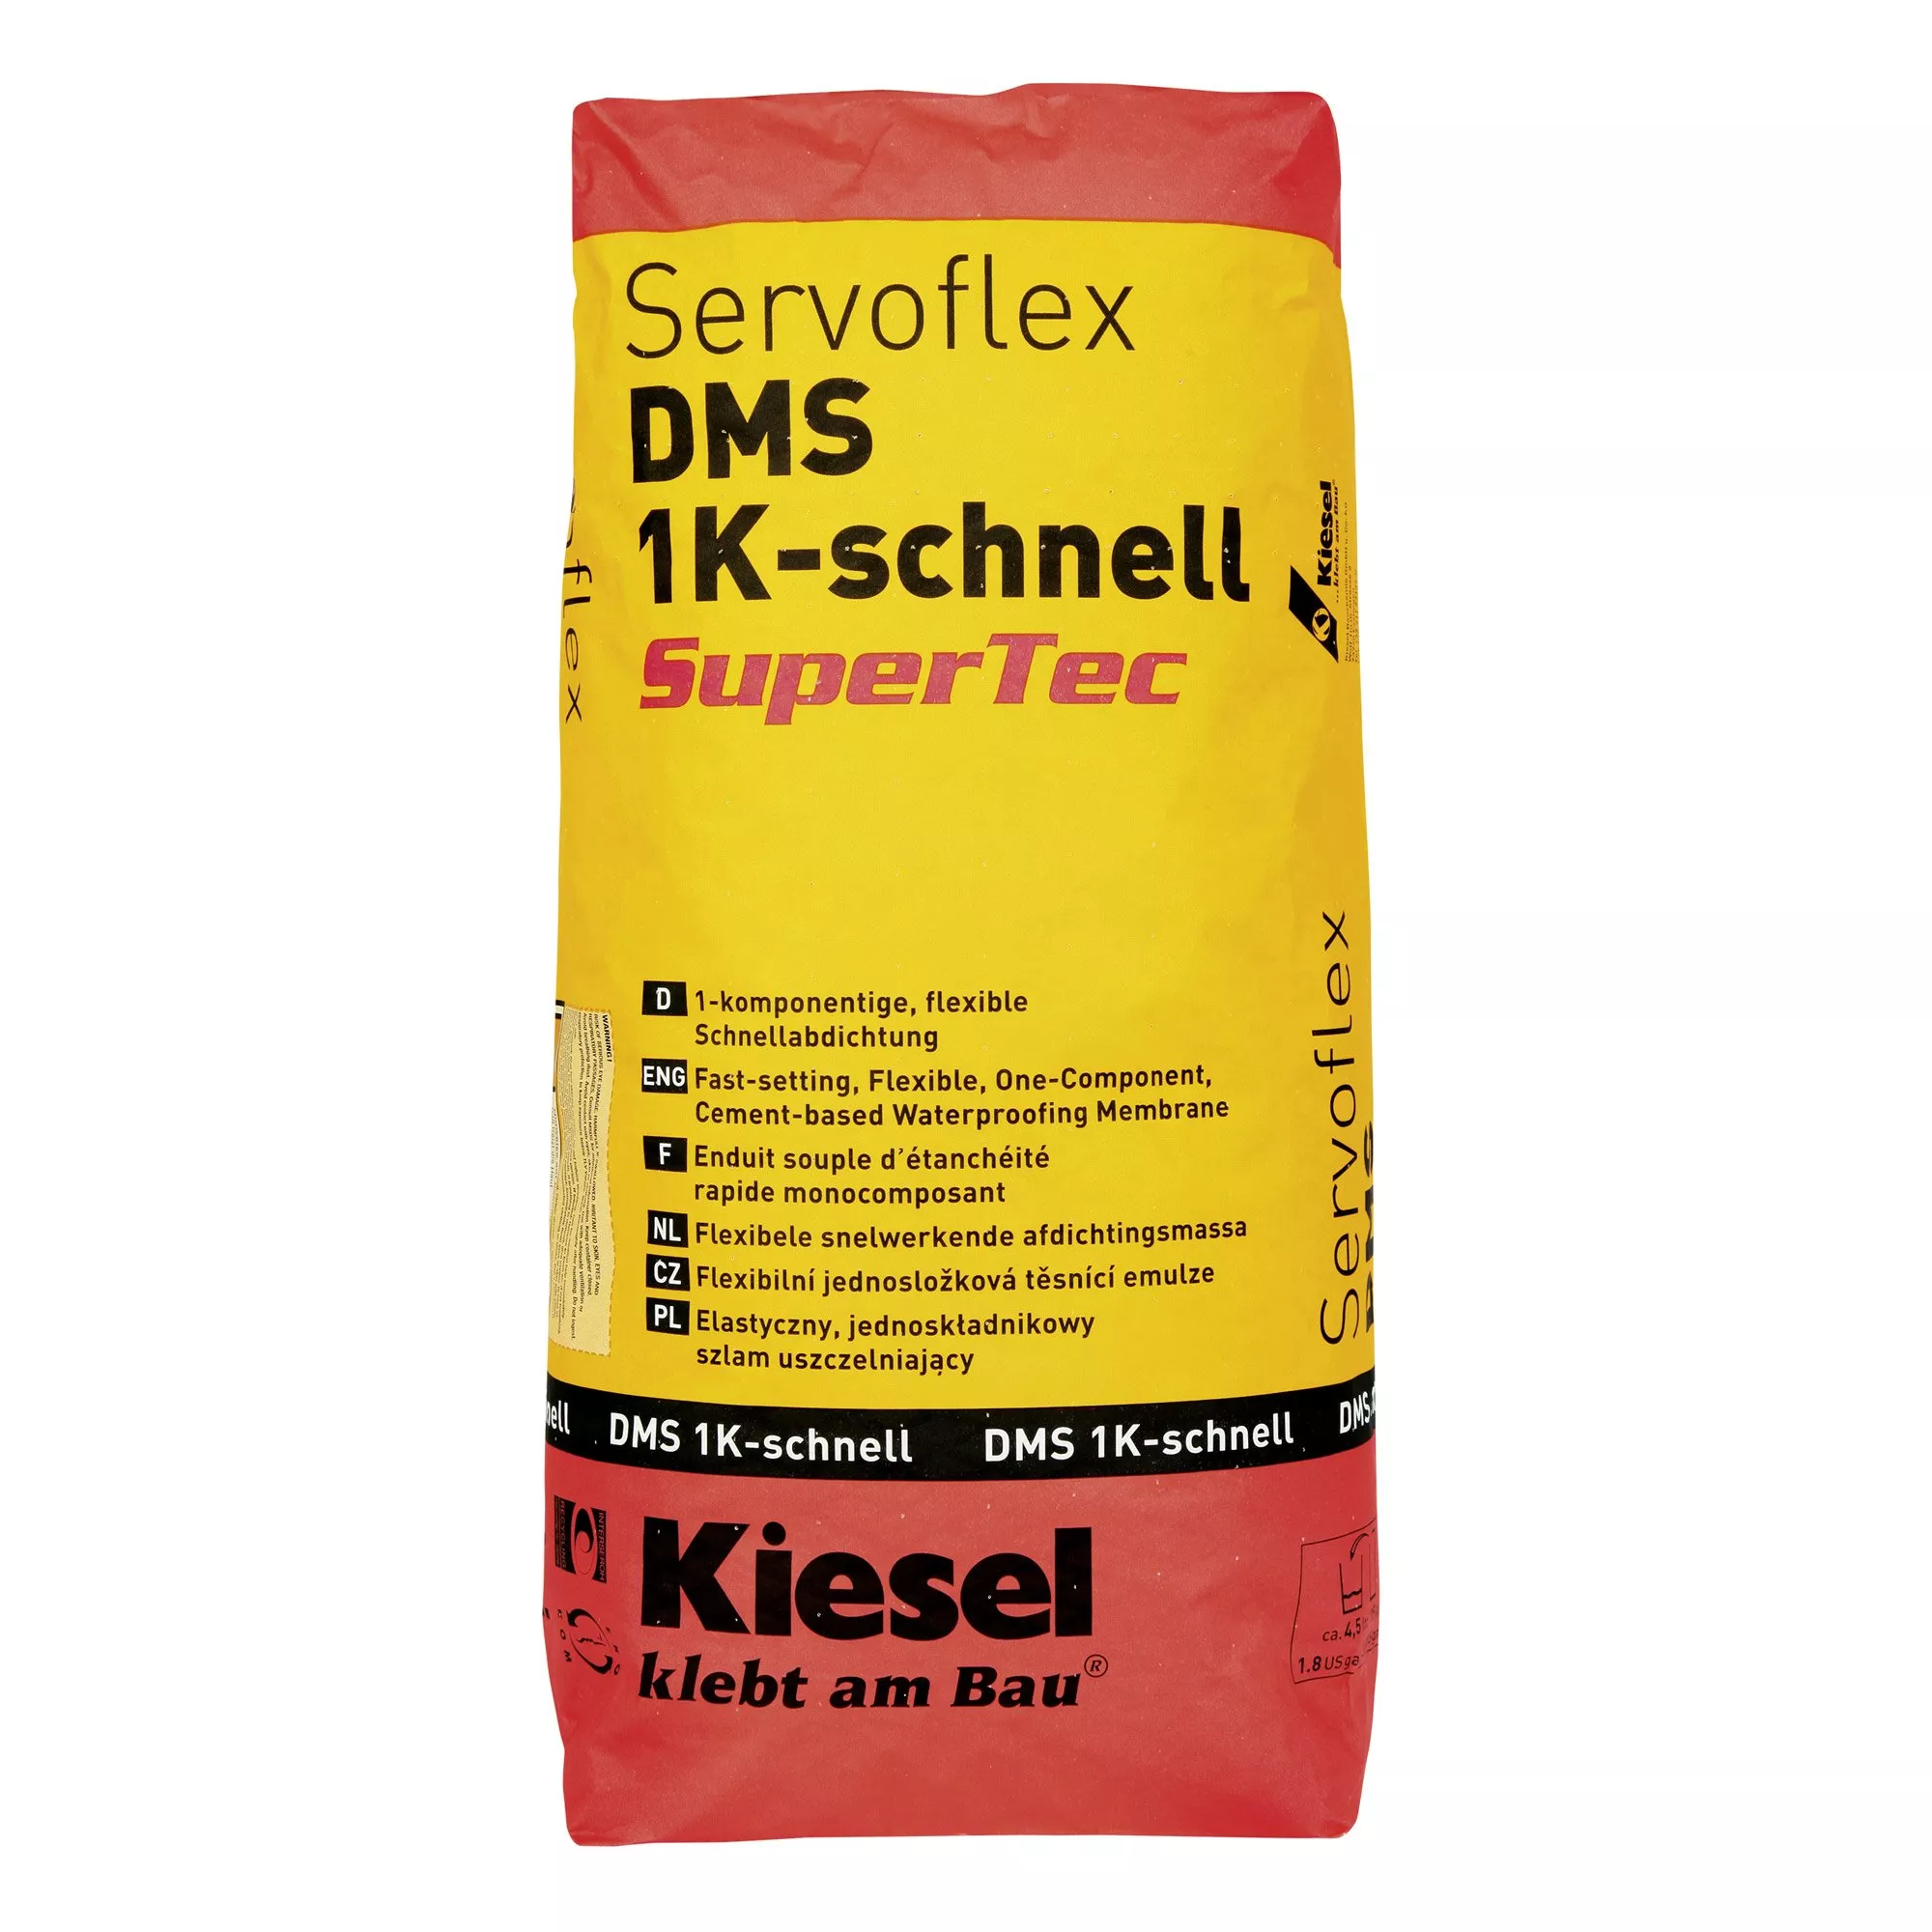 Kiesel Servoflex DMS 1K schnell SuperTec - flexible Schnellabdichtung (15KG)